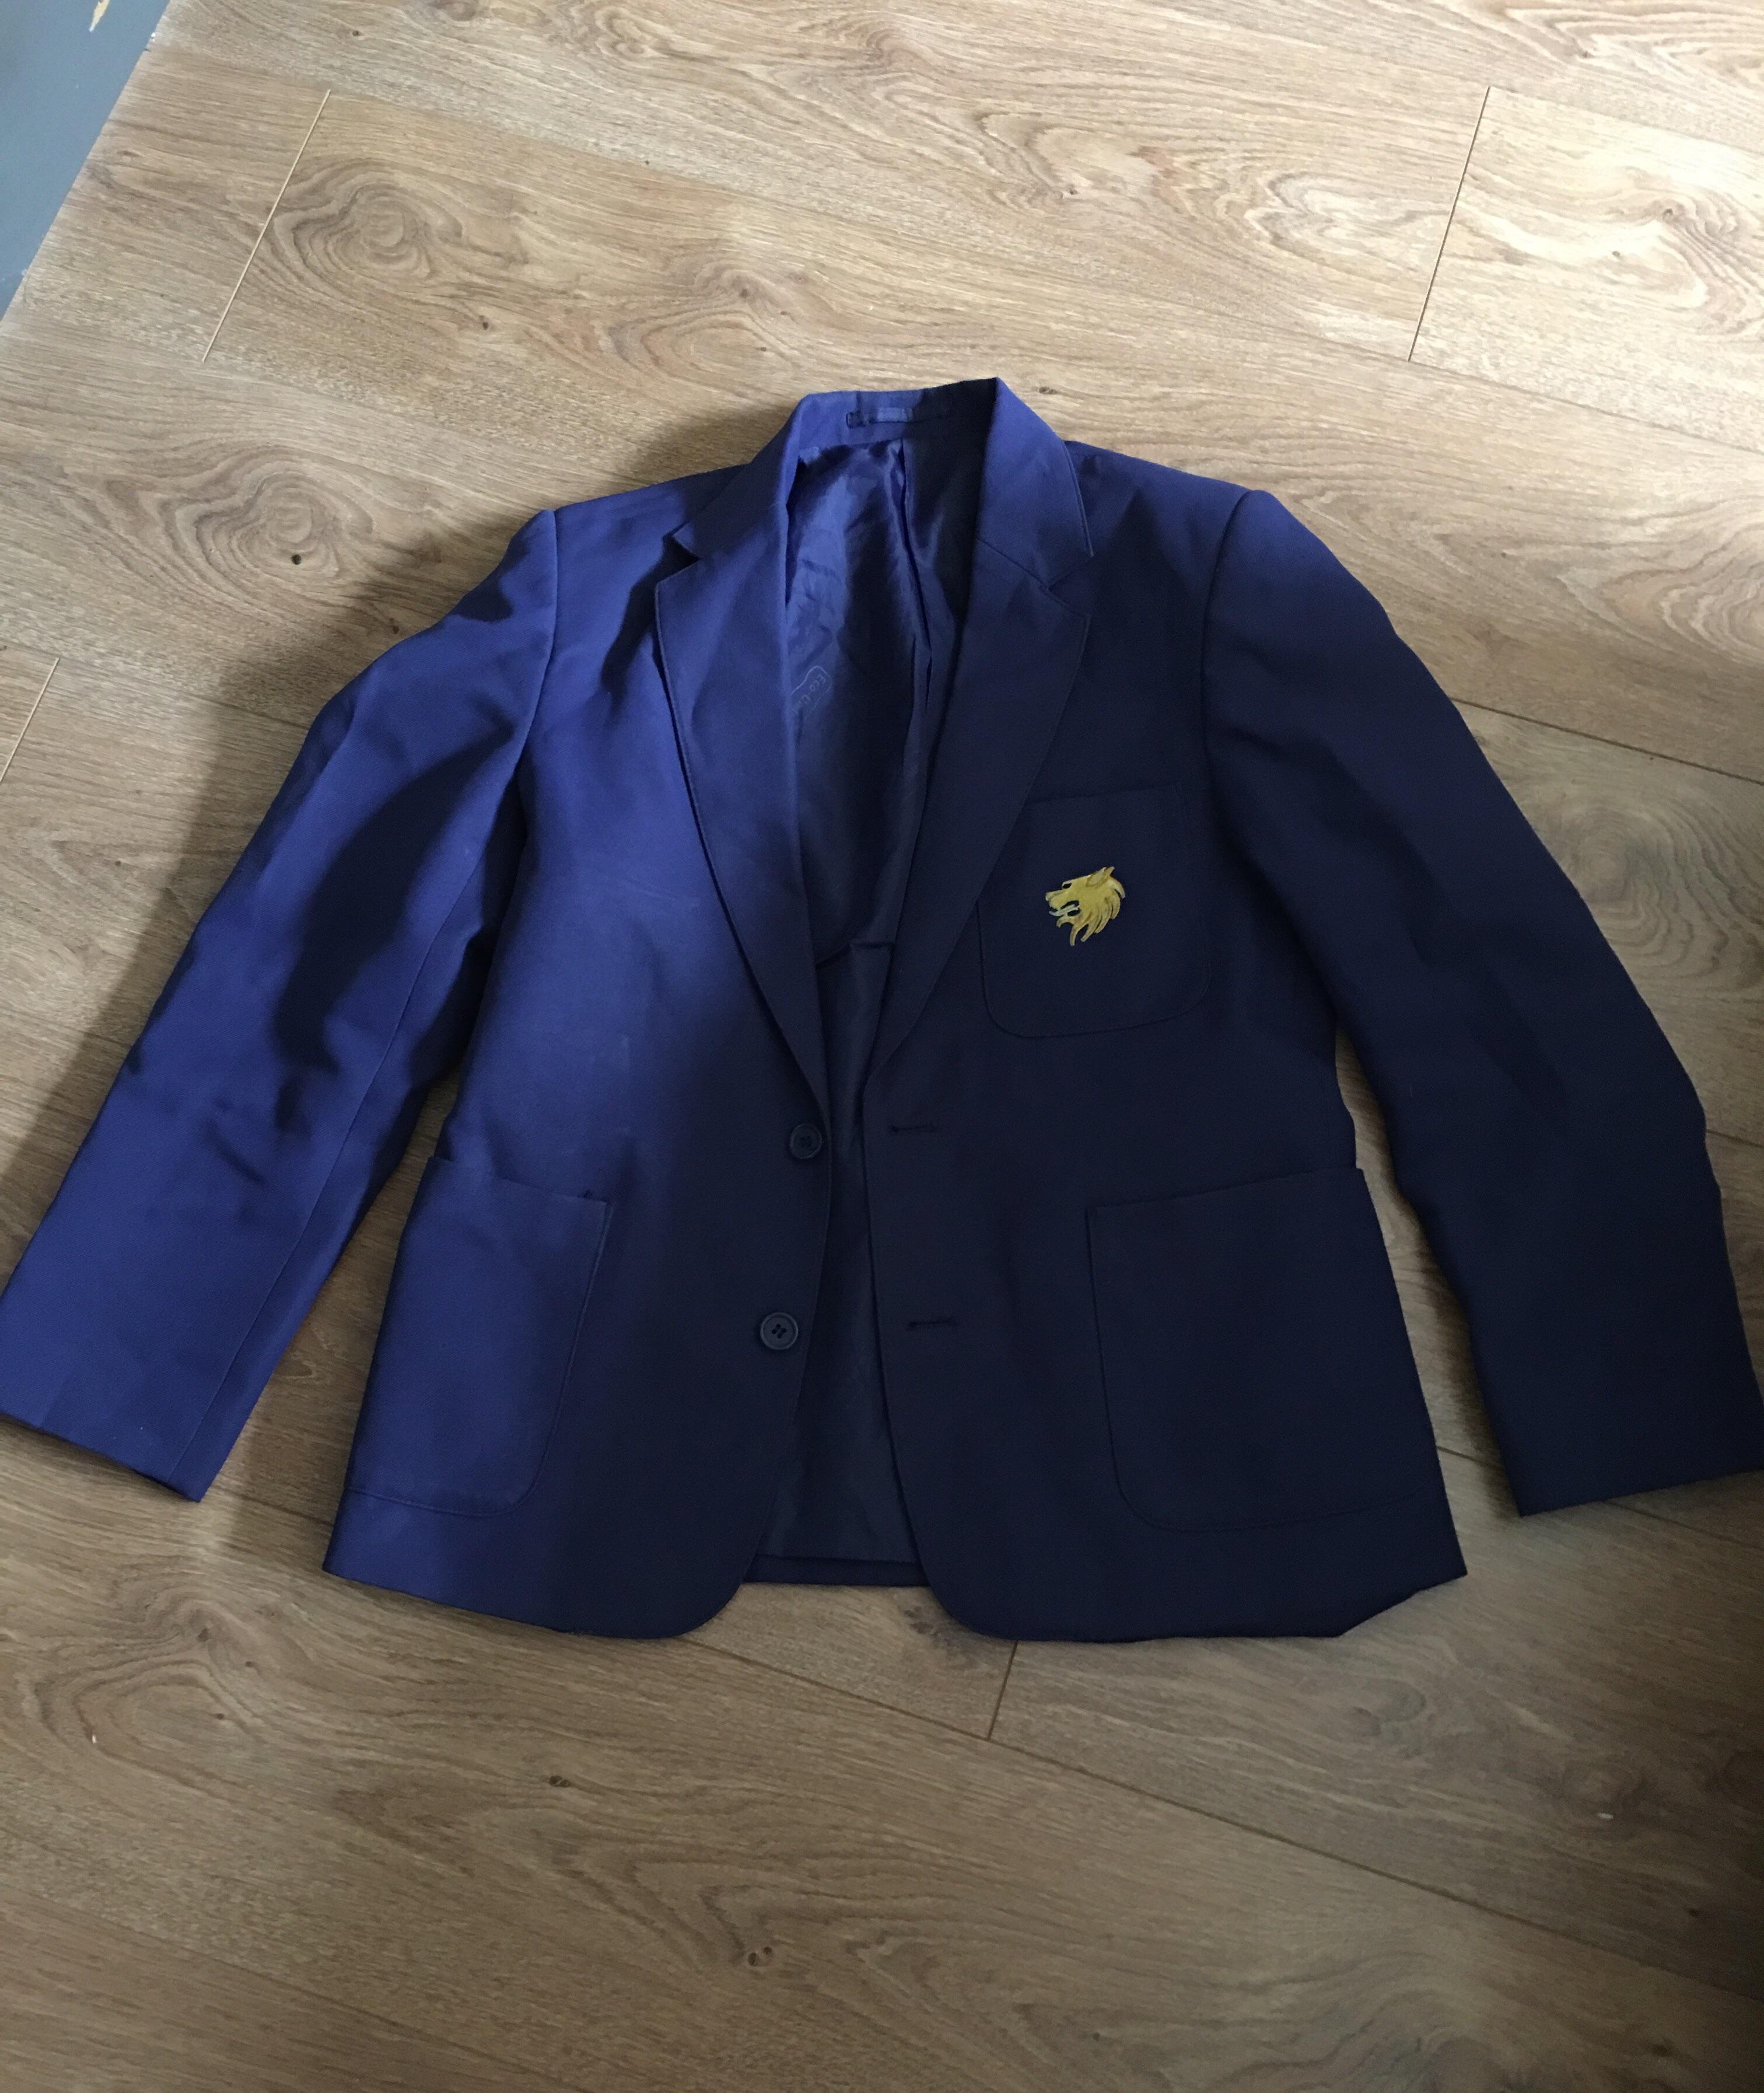 William Hulme Grammar School Uniform Blazer in M16 Manchester for £15. ...